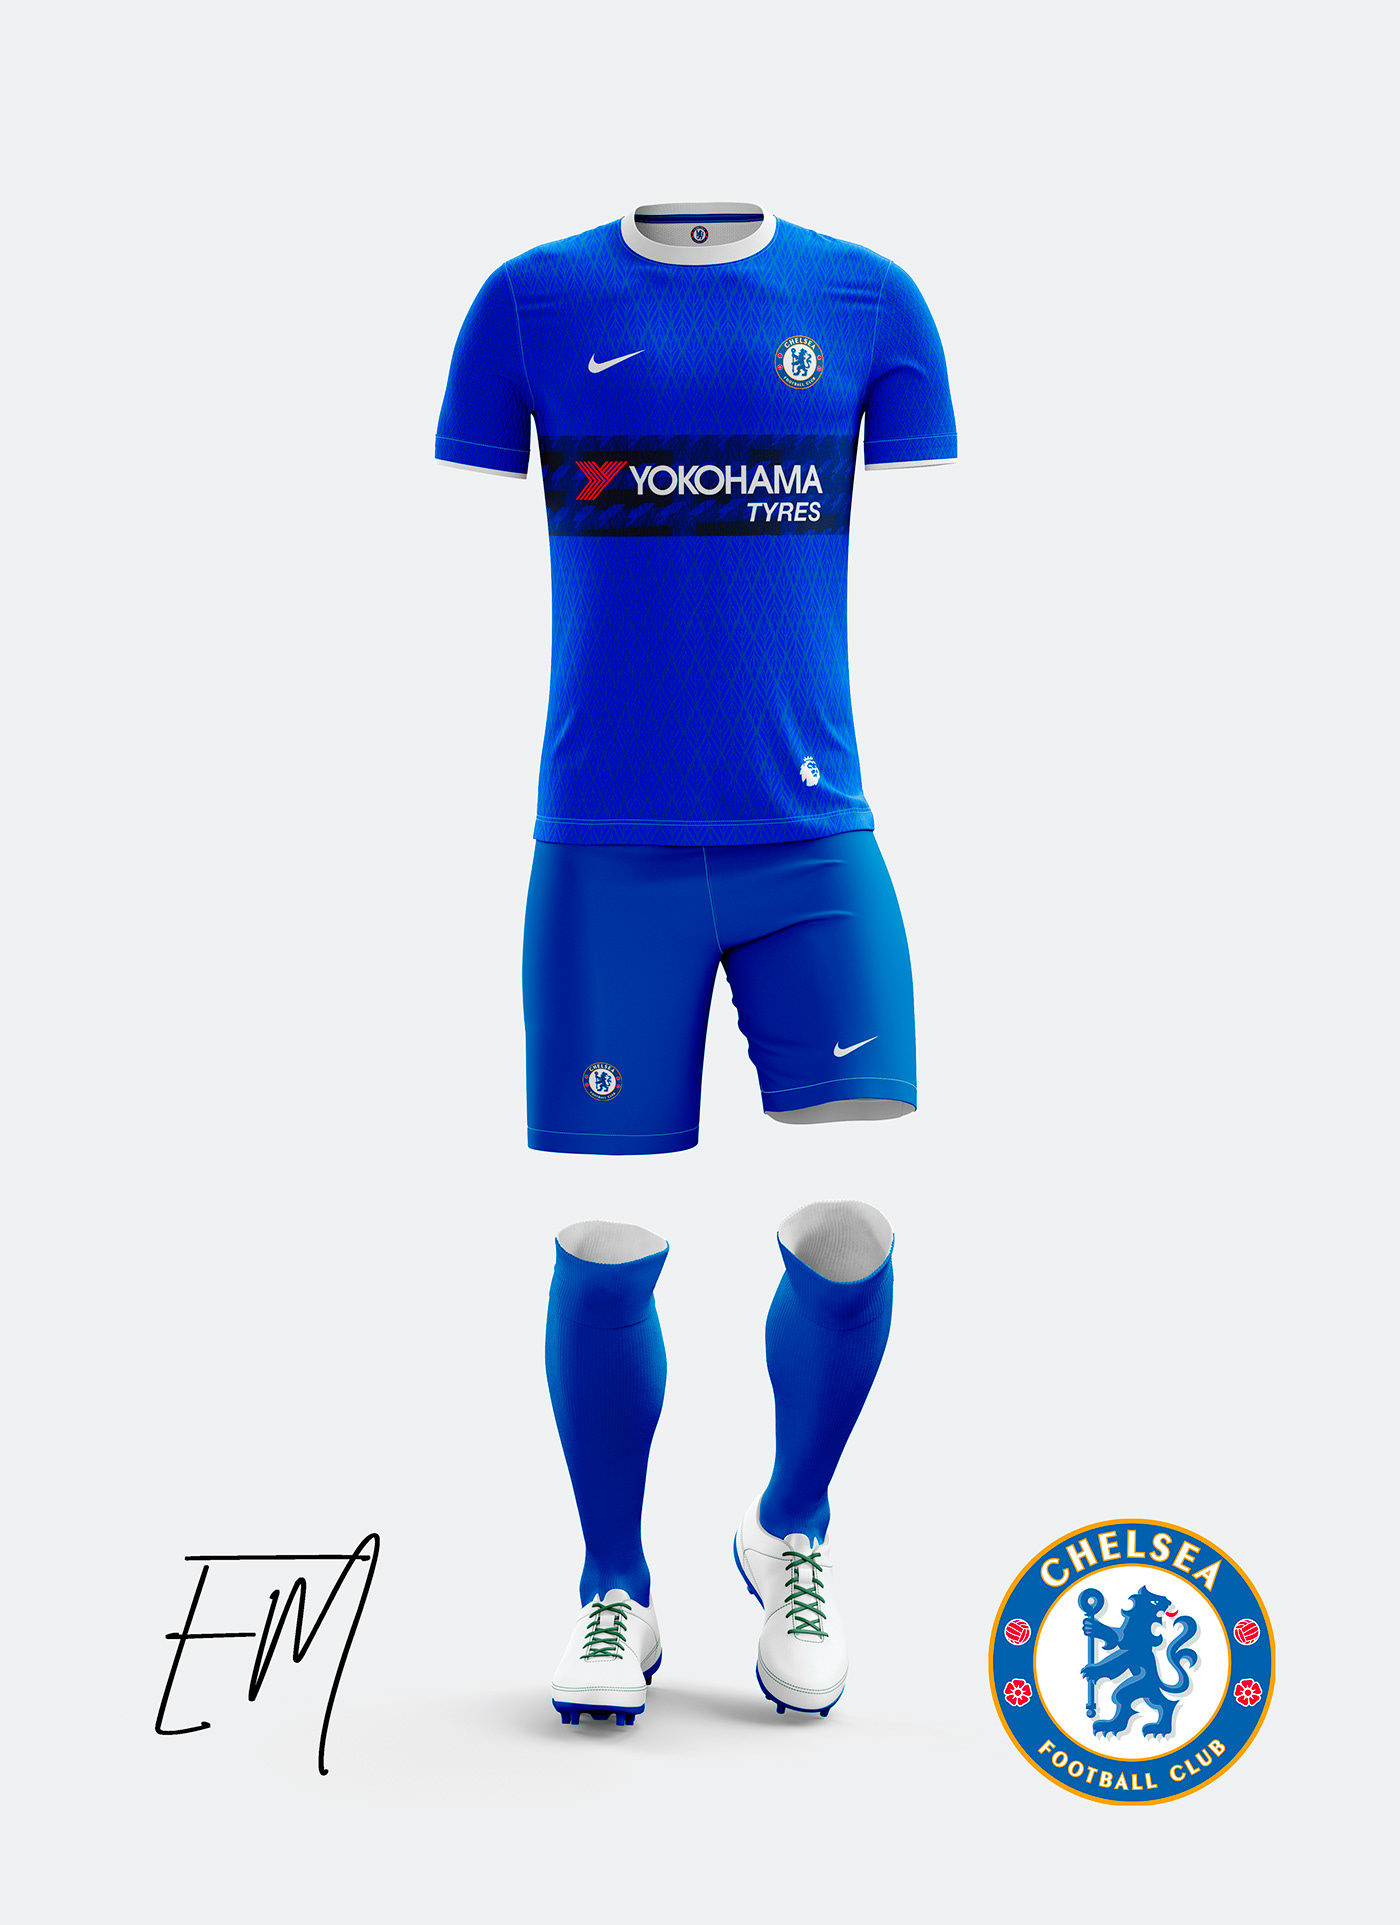 england premiereleague blue jersey Chelsea soccer inglaterra